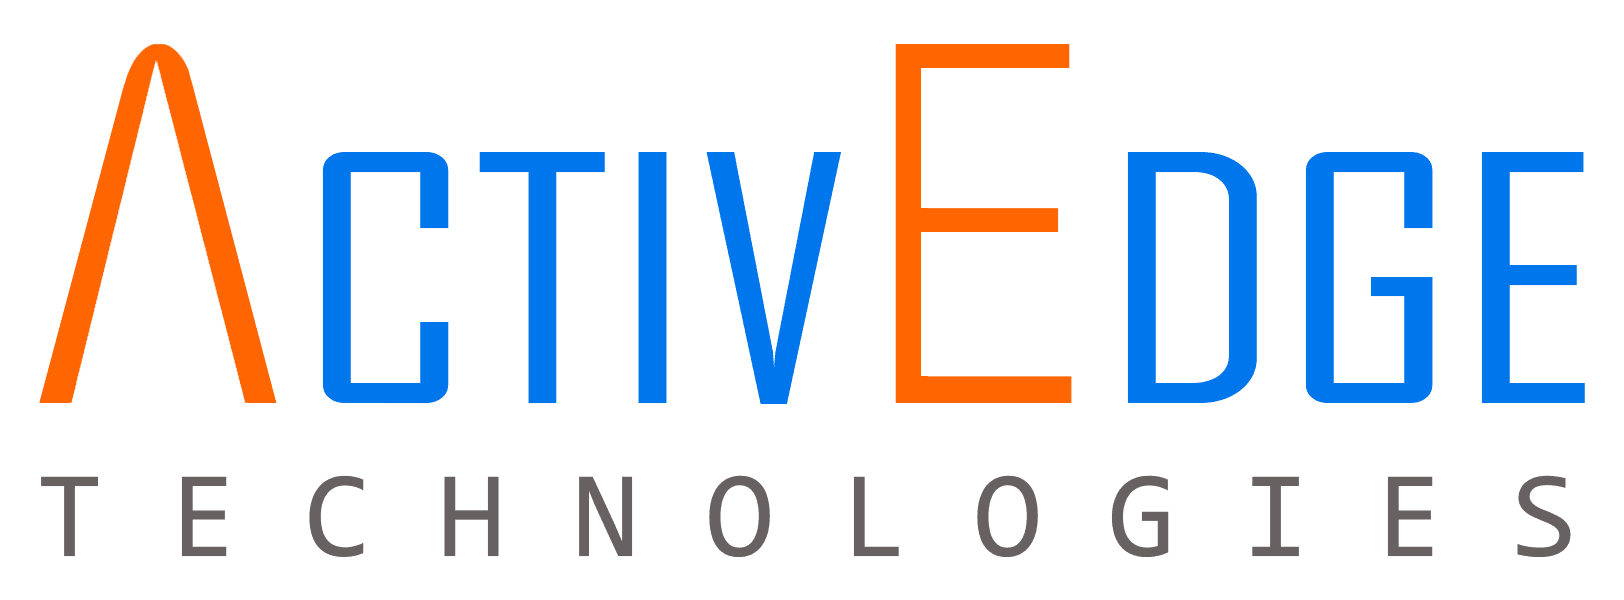 ActiveEdge Technologies